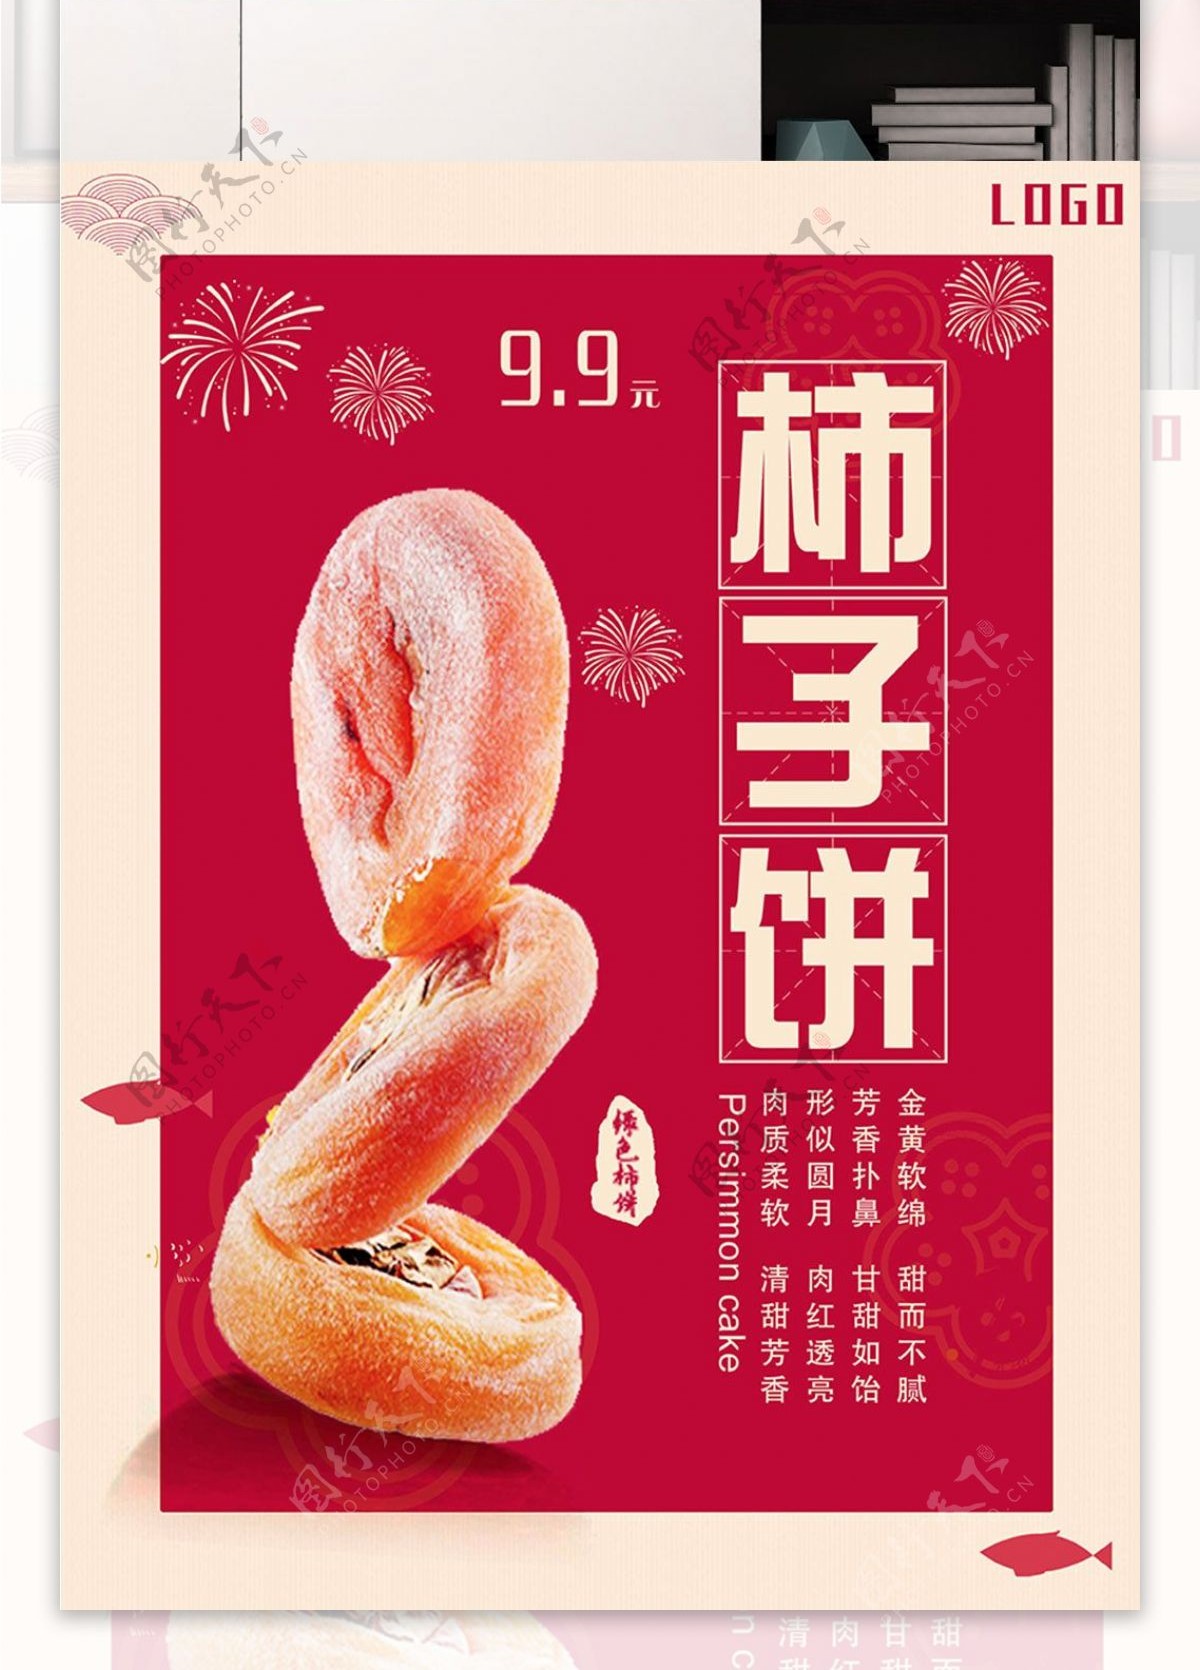 红色背景简约大气美味柿饼宣传海报